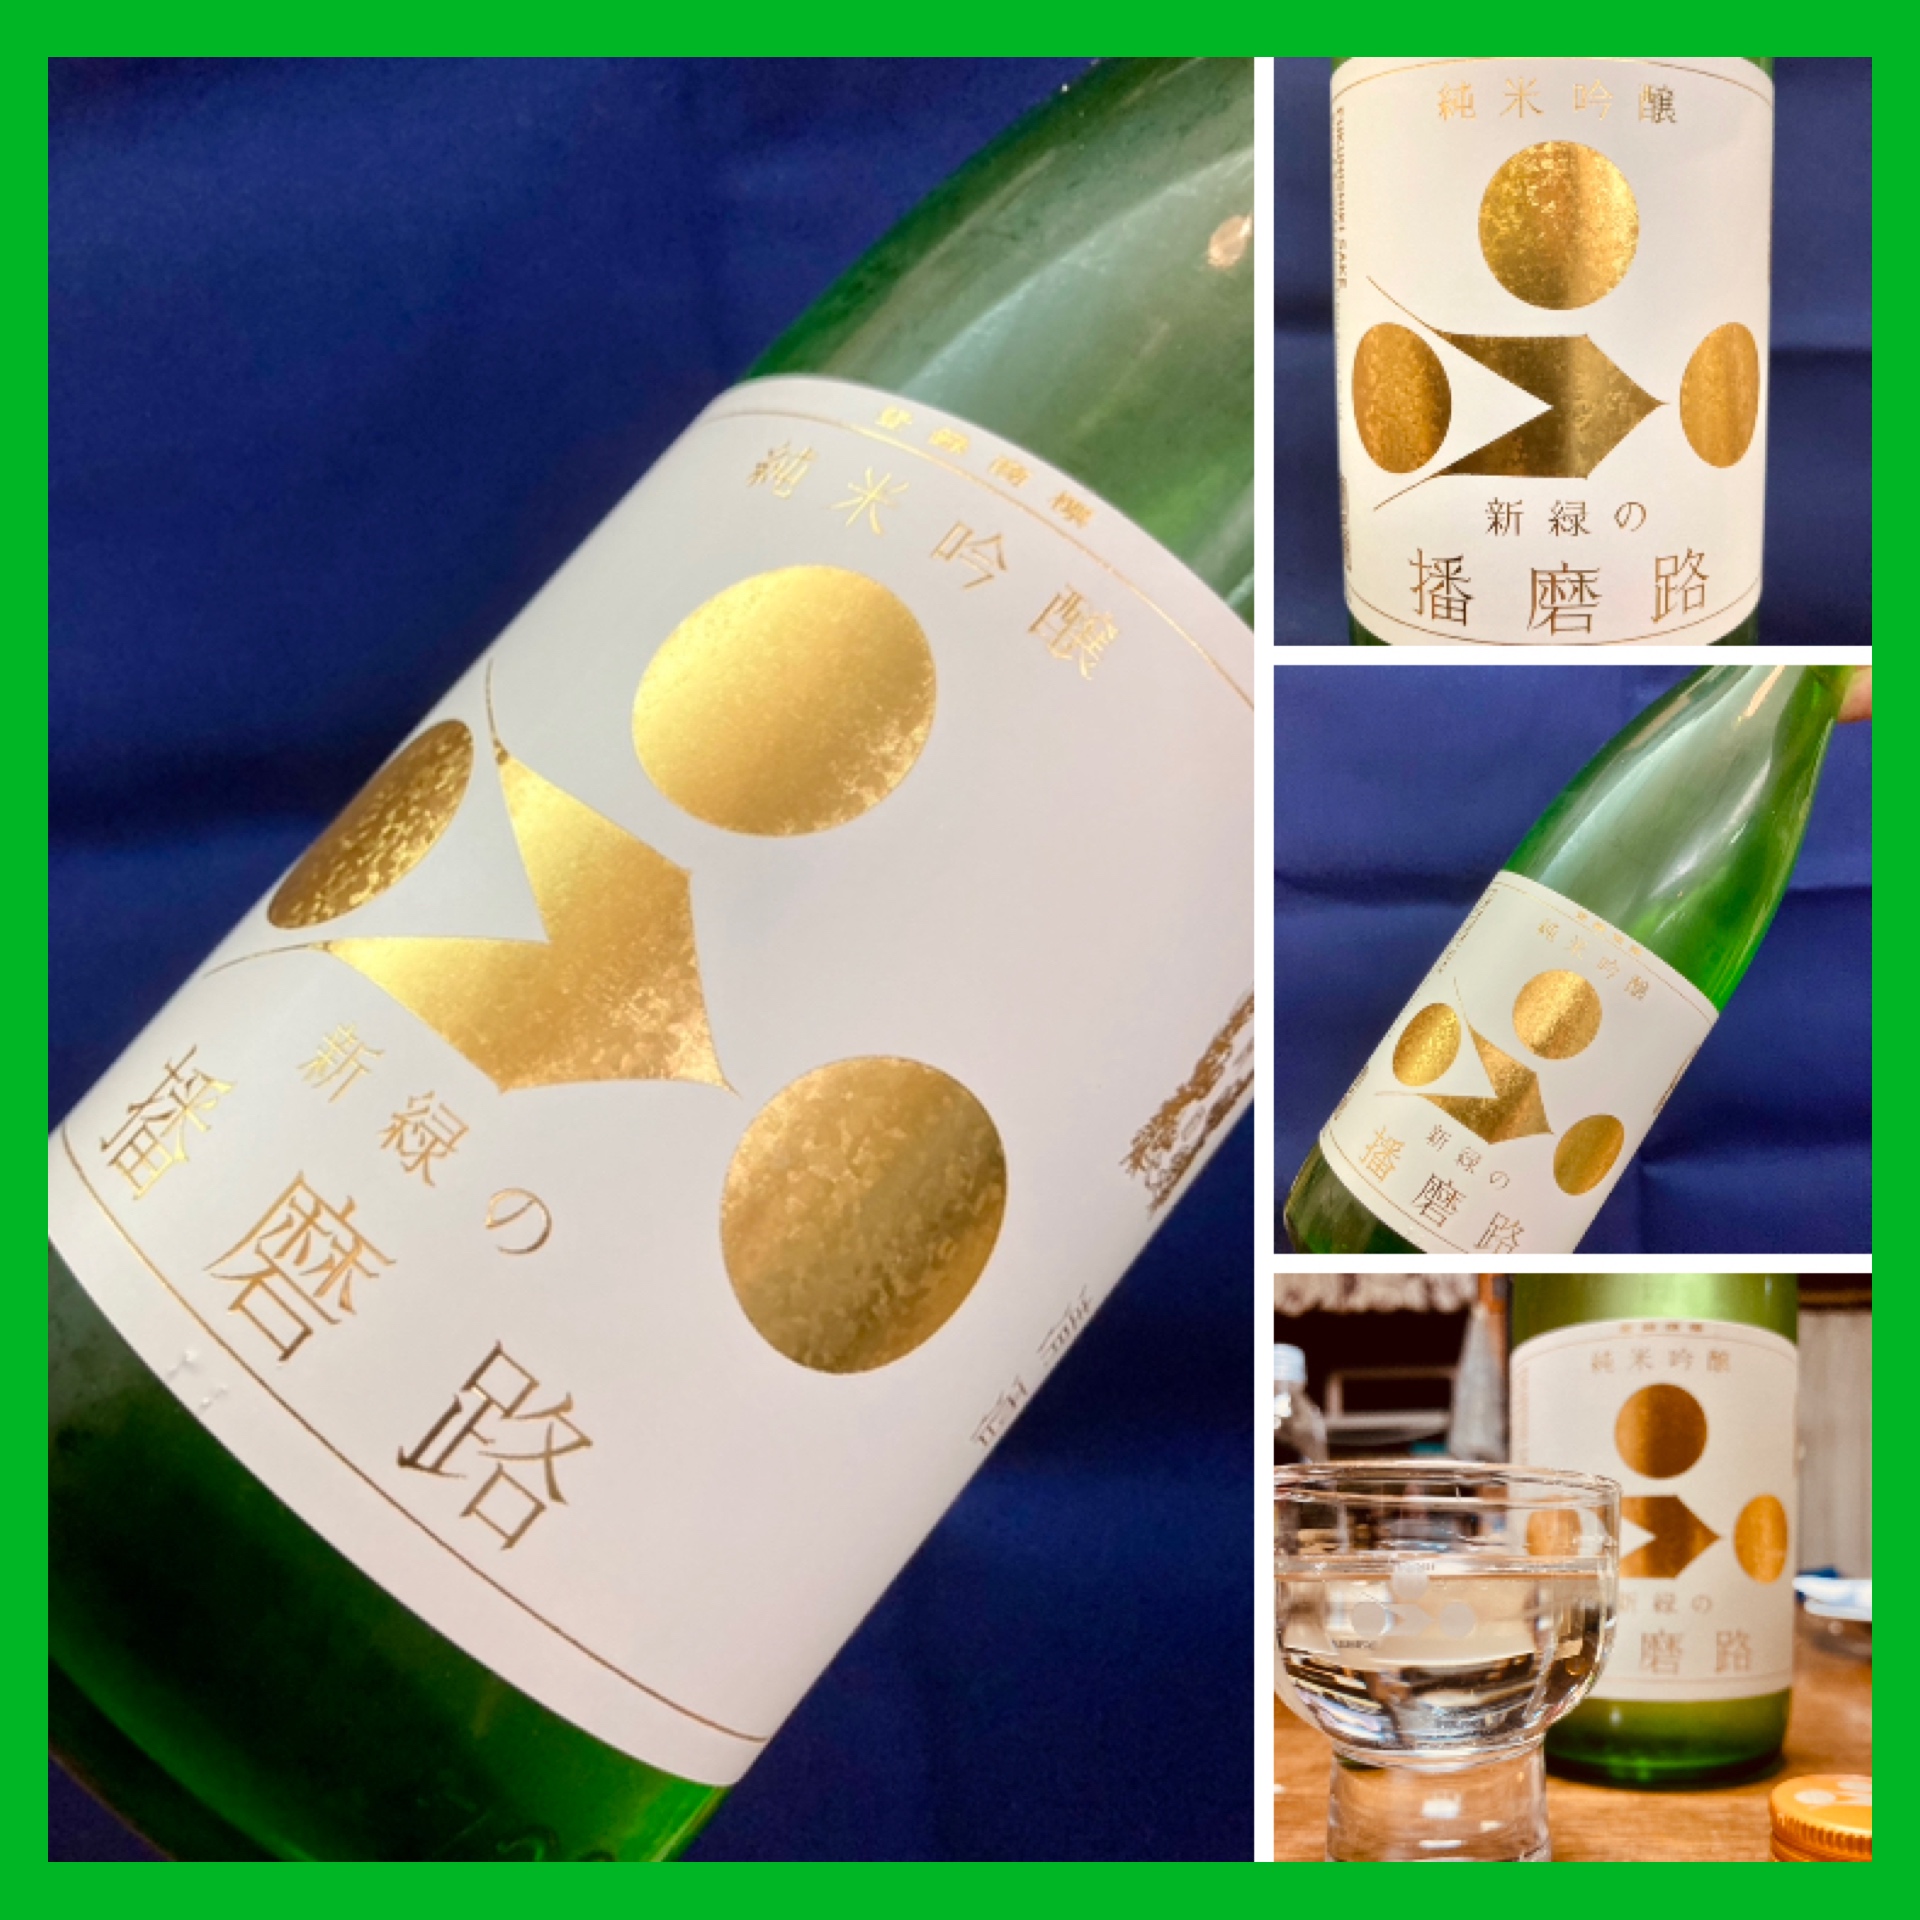 生命力溢れるこれからの季節のイメージにピッタリの爽やかな日本酒！『富久錦 純米吟醸〈新緑の播磨路〉』